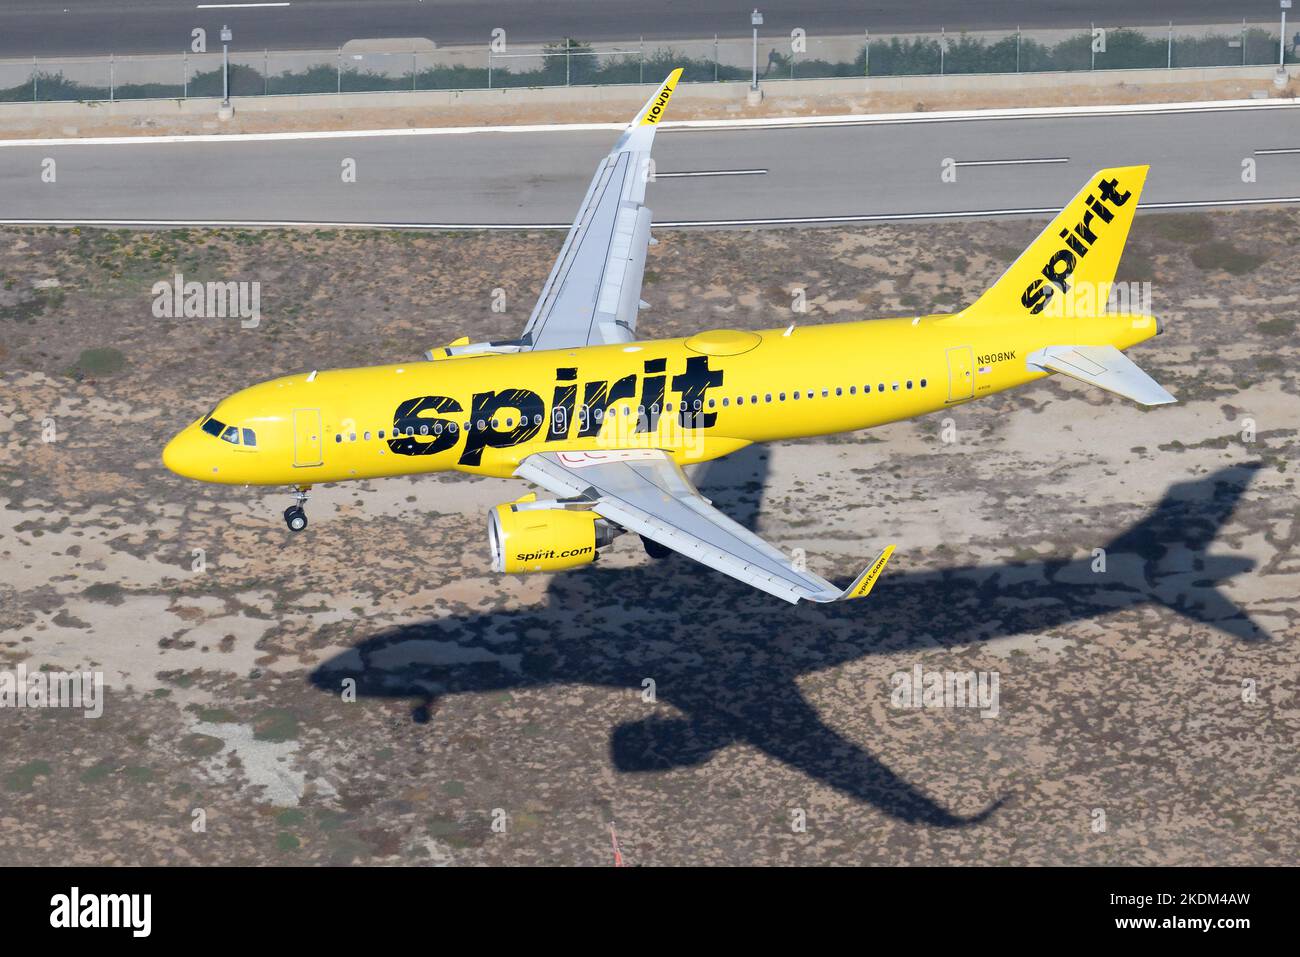 Atterraggio di aerei Spirit Airlines Airbus A320. Compagnia aerea low cost dagli Stati Uniti con aerei in livrea gialla. Aereo A320neo di Spirirt Airlines Foto Stock